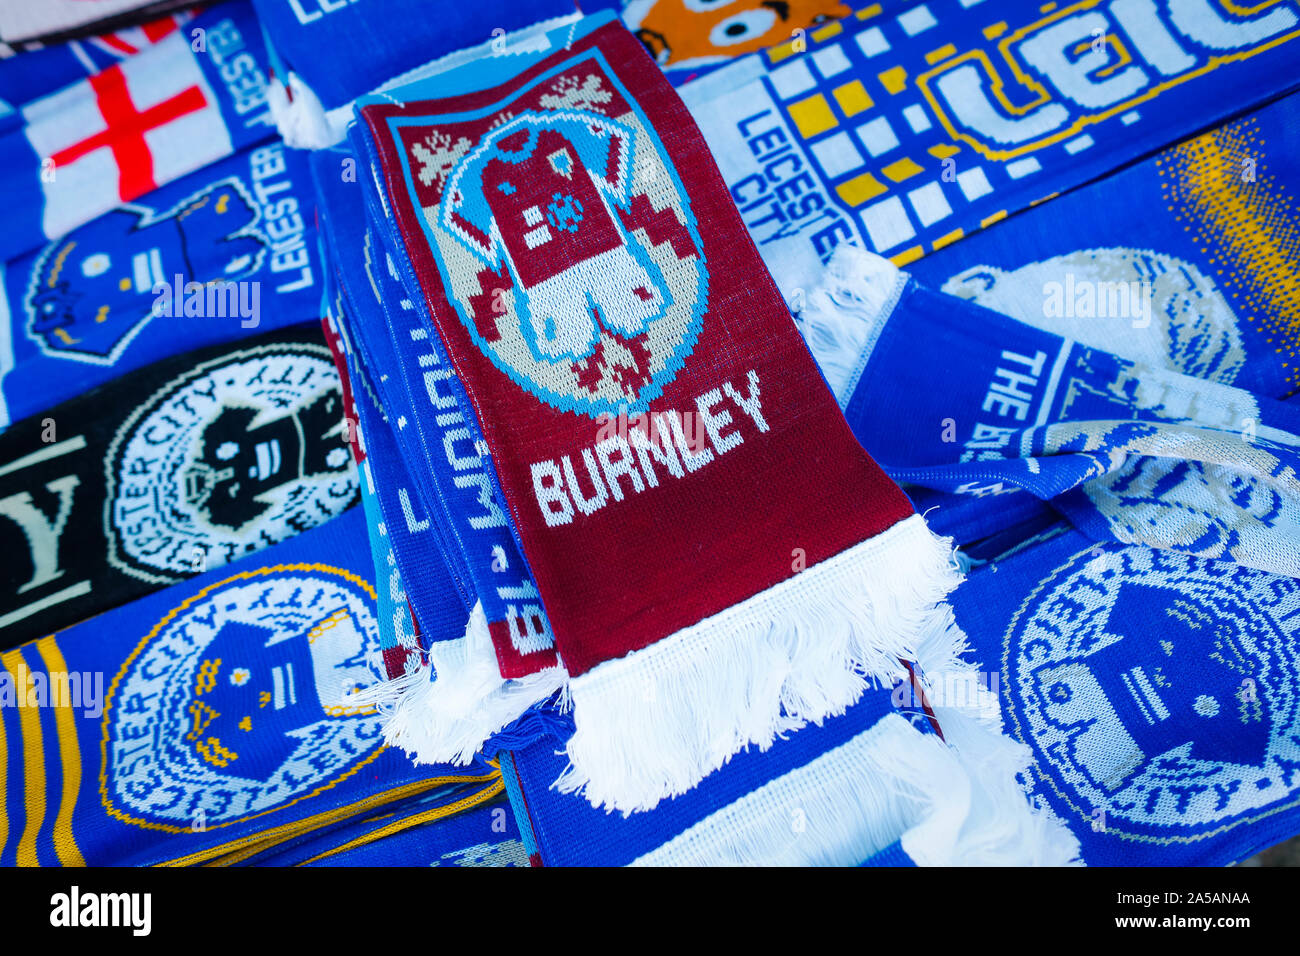 19 octobre 2019 ; King Power Stadium, Leicester, Midlands, Angleterre ;  English Premier League Football, Leicester City contre Burnley ; un foulard  sur Burnley vente parmi les écharpes de Leicester City -